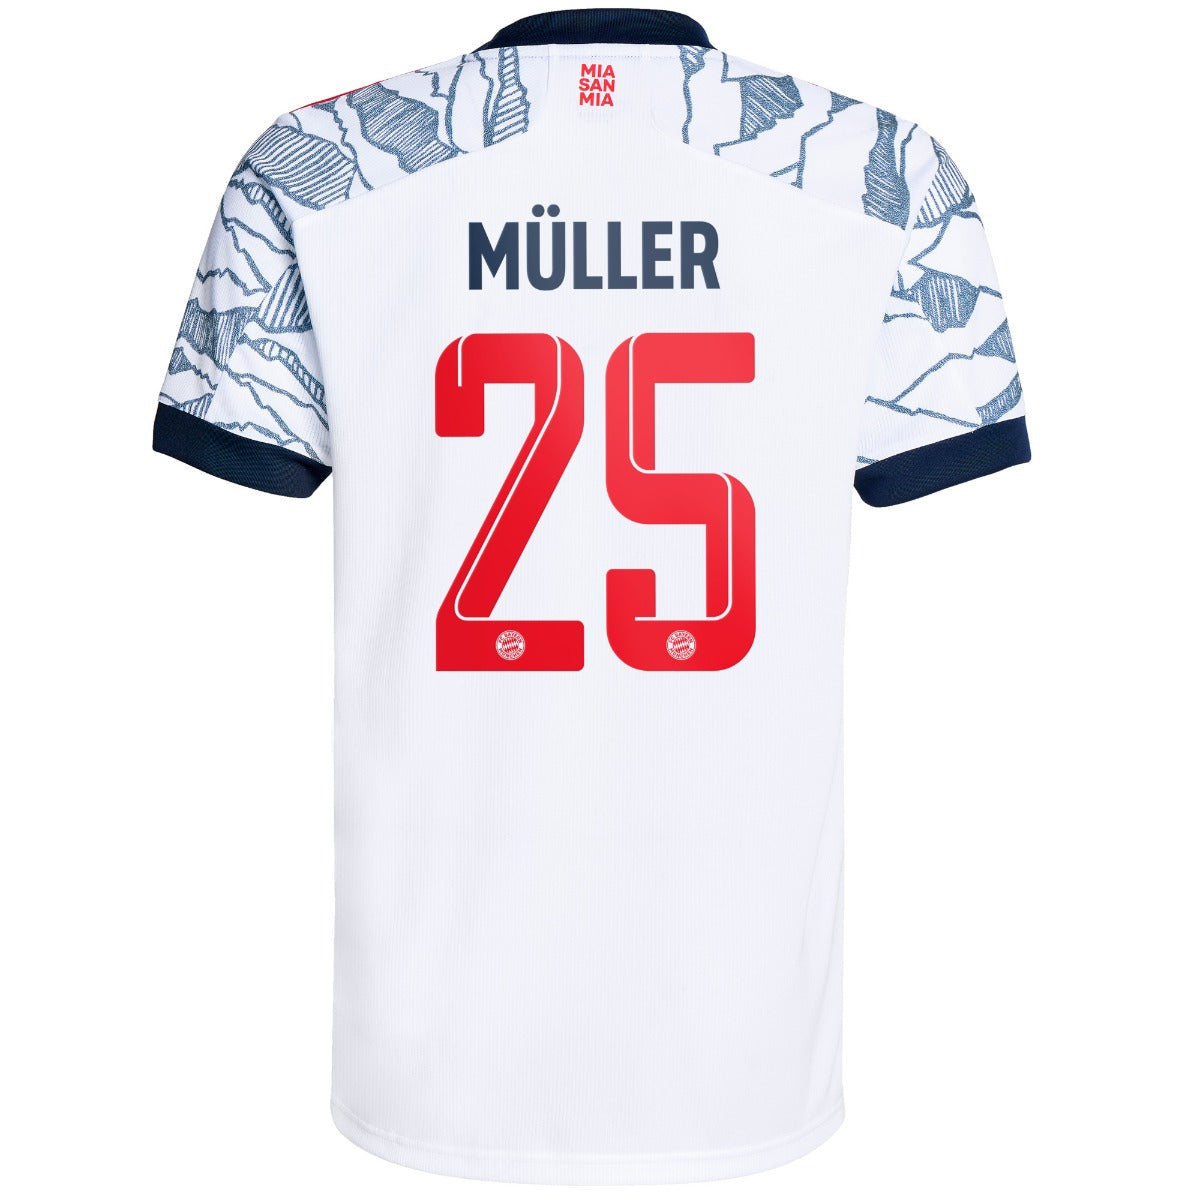 Adidas, Terza maglia autentica del Bayern Monaco Adidas 2021-22 - Bianco